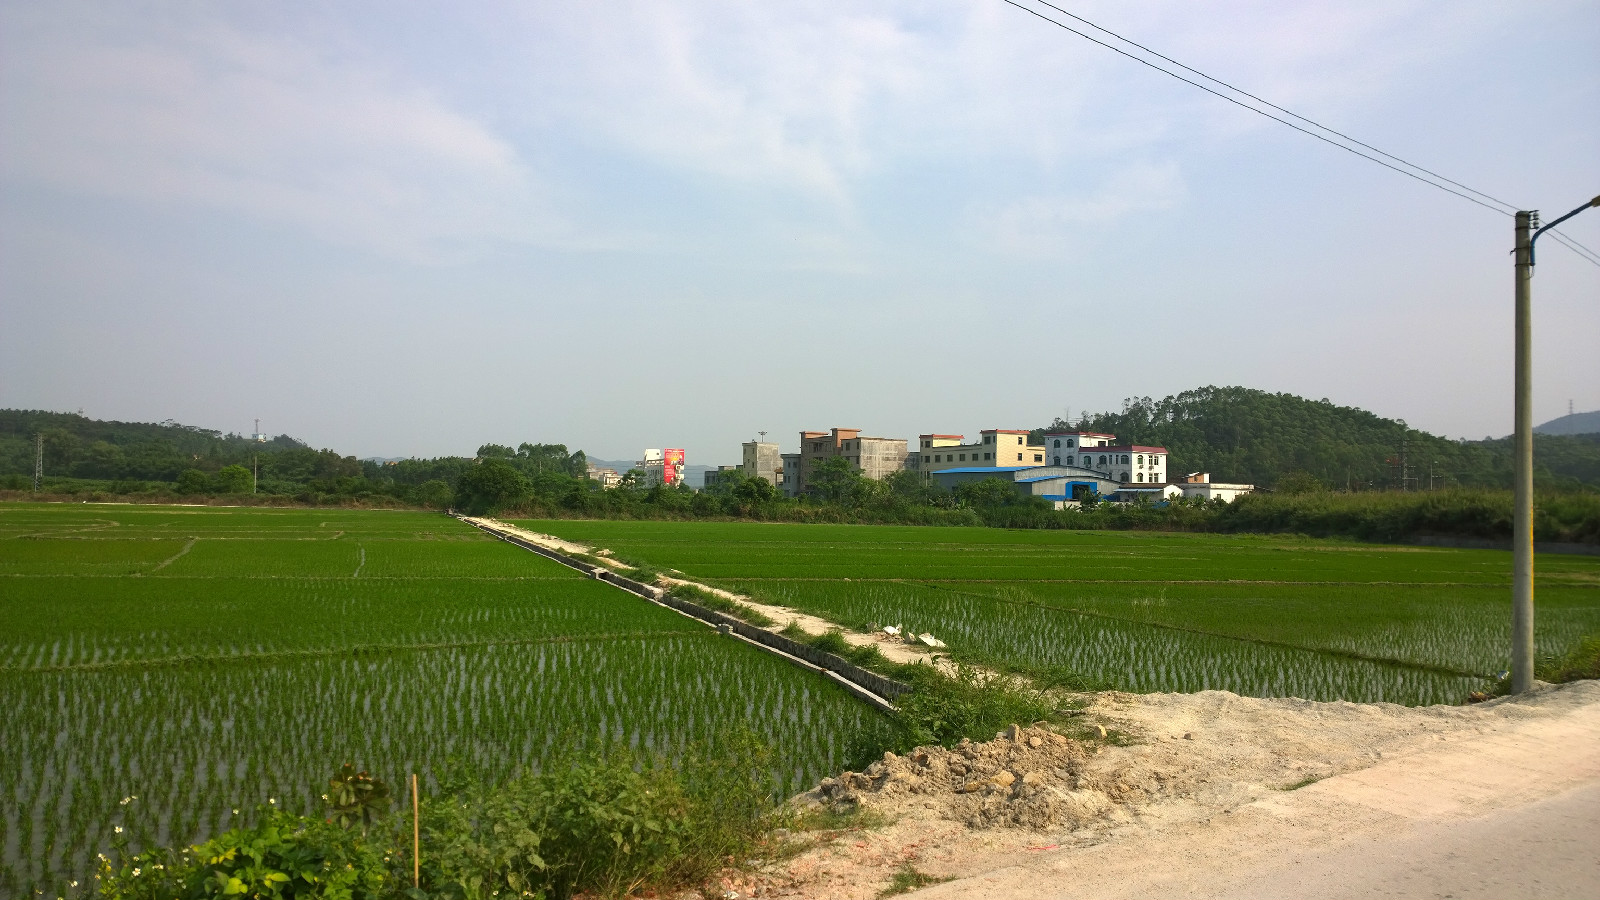 村前農田保護區，是該鎮最大的水稻基地